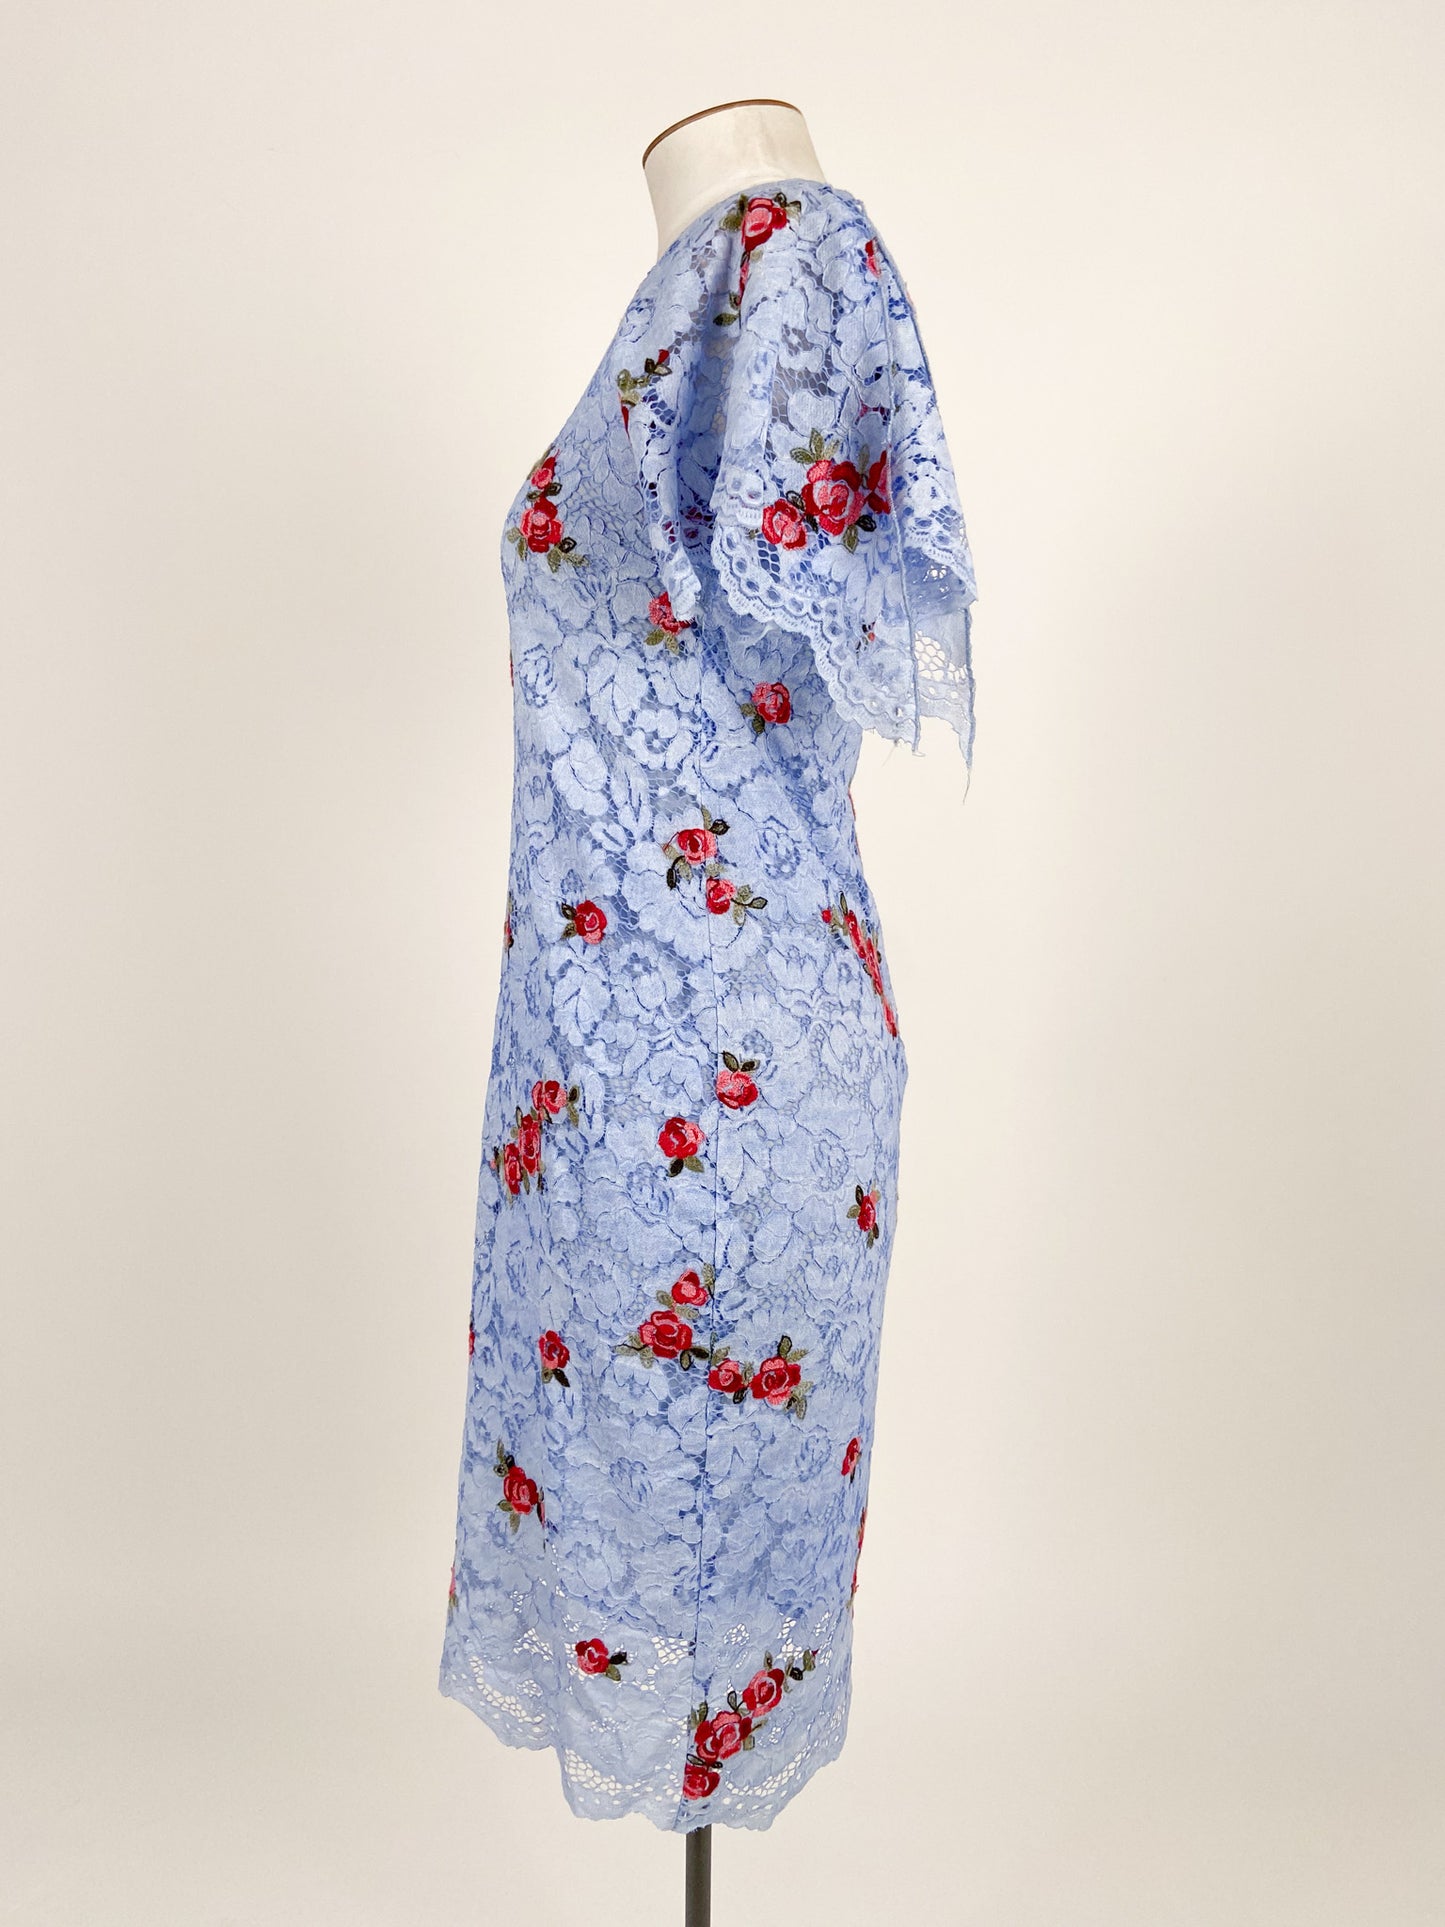 Trelise Cooper | Blue Formal/Workwear Dress | Size M